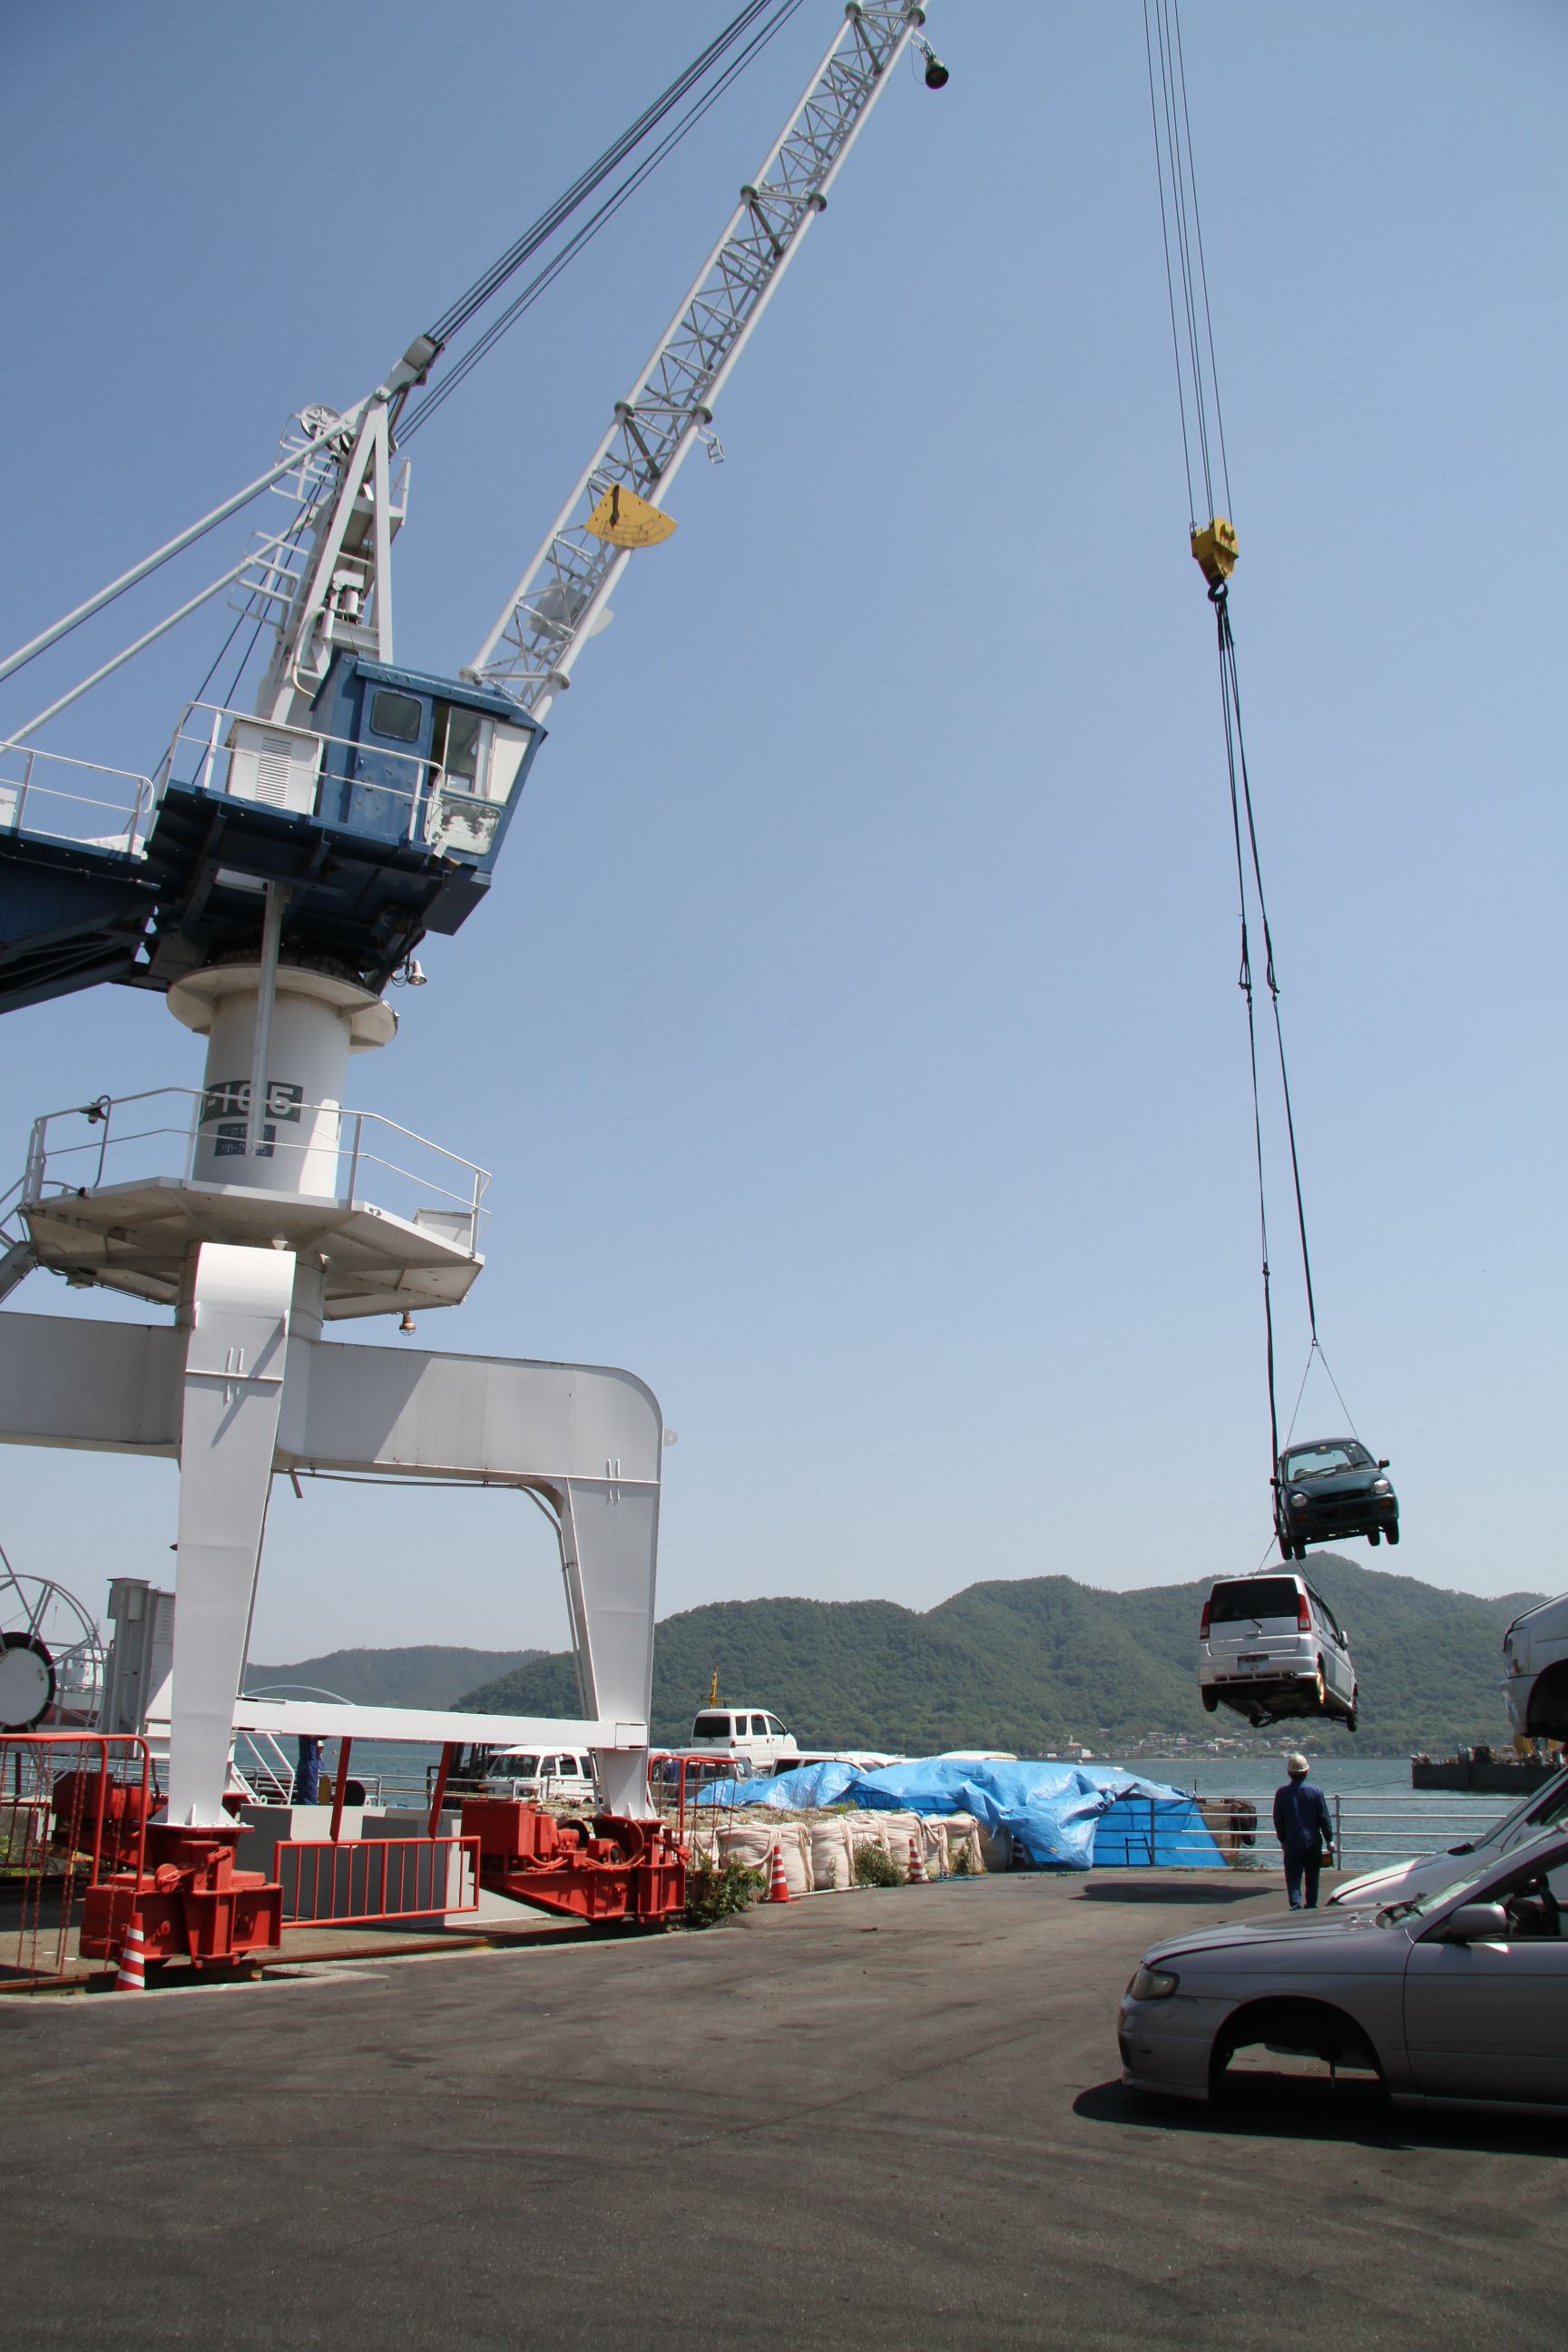 使用済み自動車回収／海上輸送で瀬戸内海の環境を守る
ツネイシCバリューズの離島支援活動～今年で11回目、累計624台に